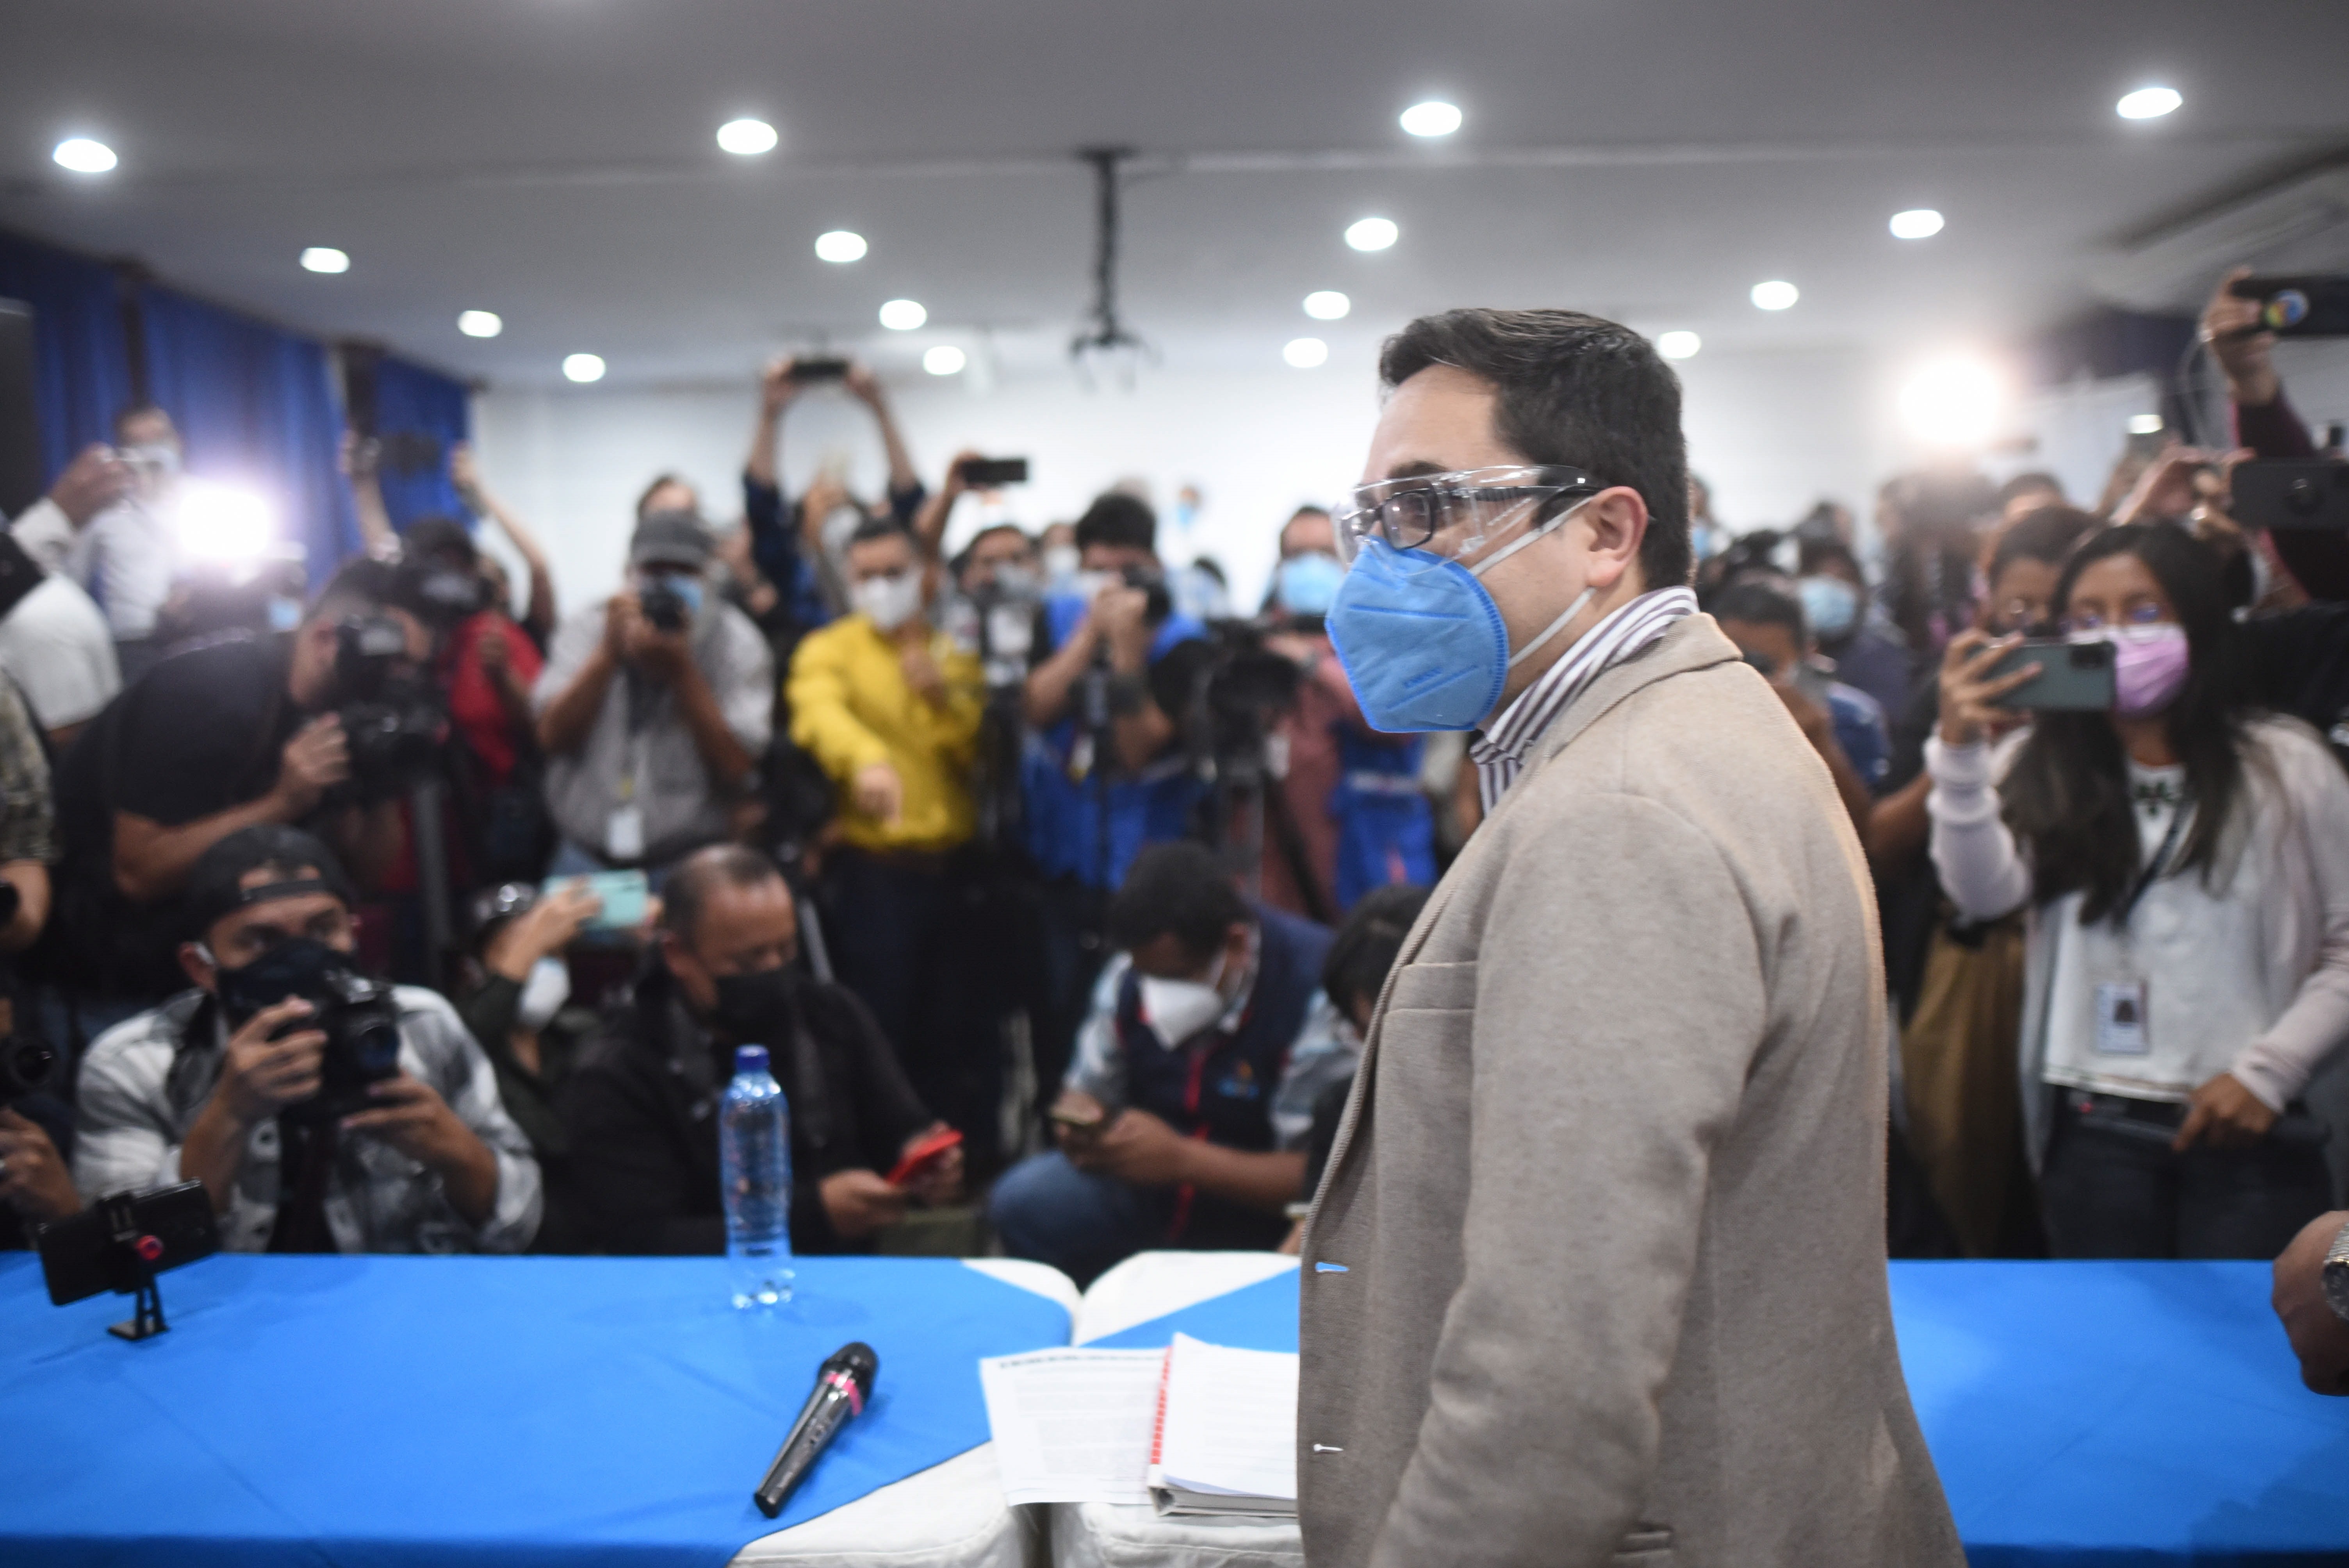 Juan Francisco Sandoval, durante el tiempo que lideró la Fiscalía Especial contra la Impunidad del Ministerio Público, reveló decenas de casos de corrupción. (Foto Prensa Libre: EFE) 